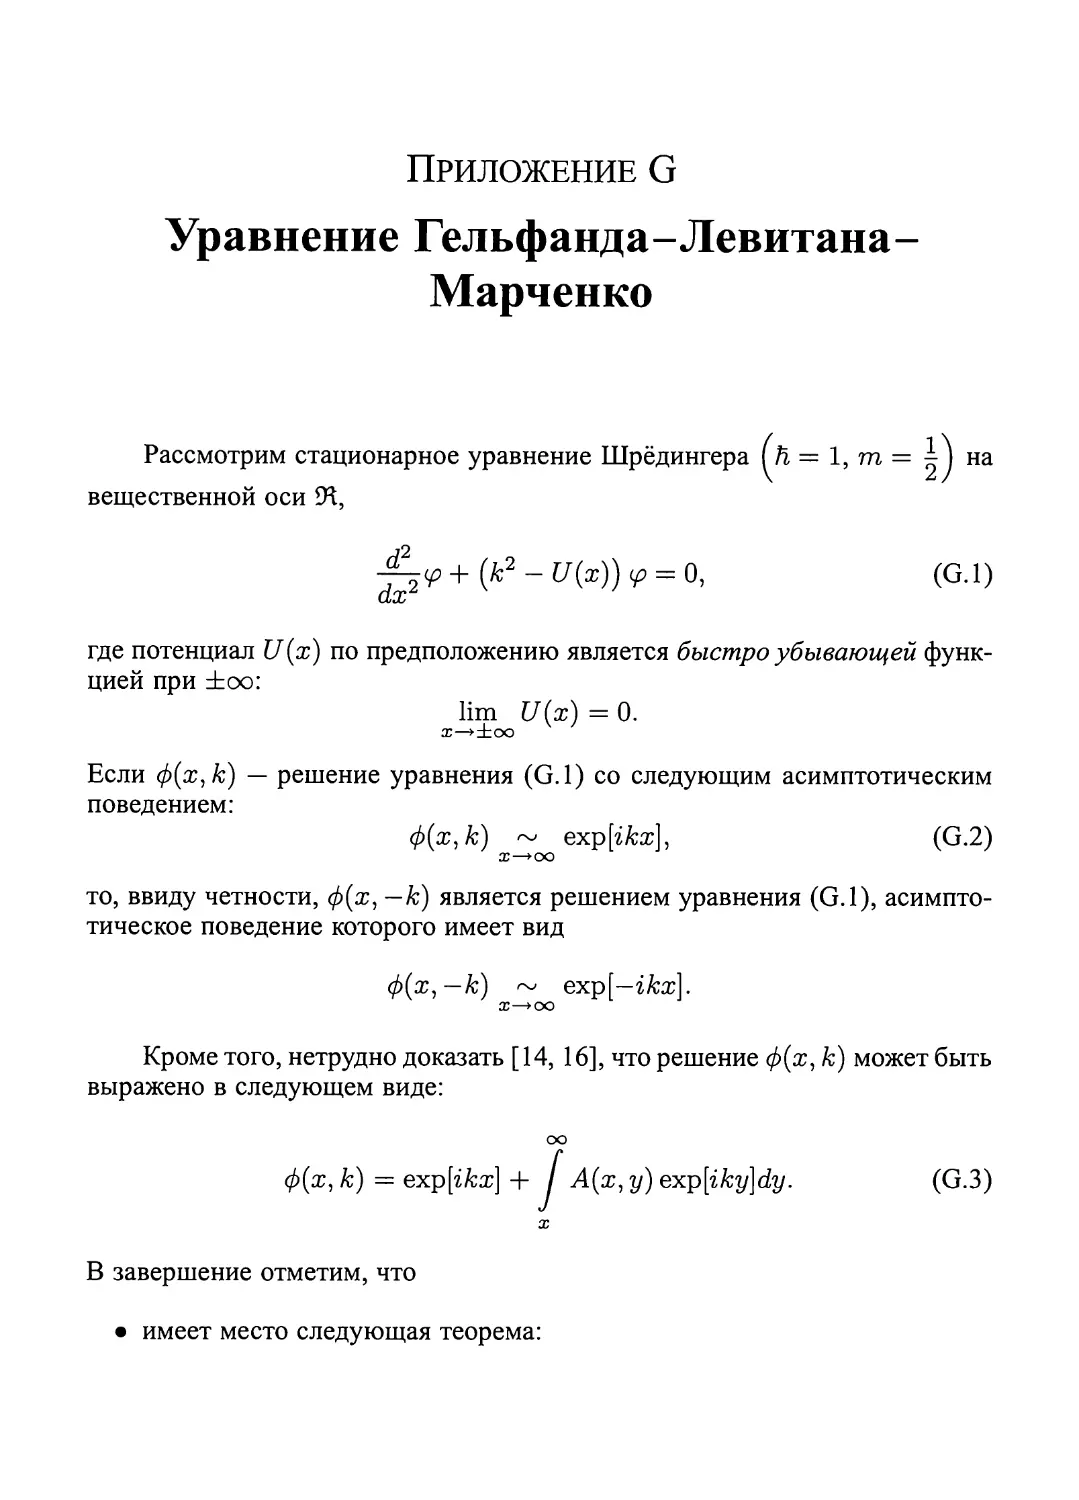 Приложение G.  Уравнение  Гельфанда-Левитана-Марченко.